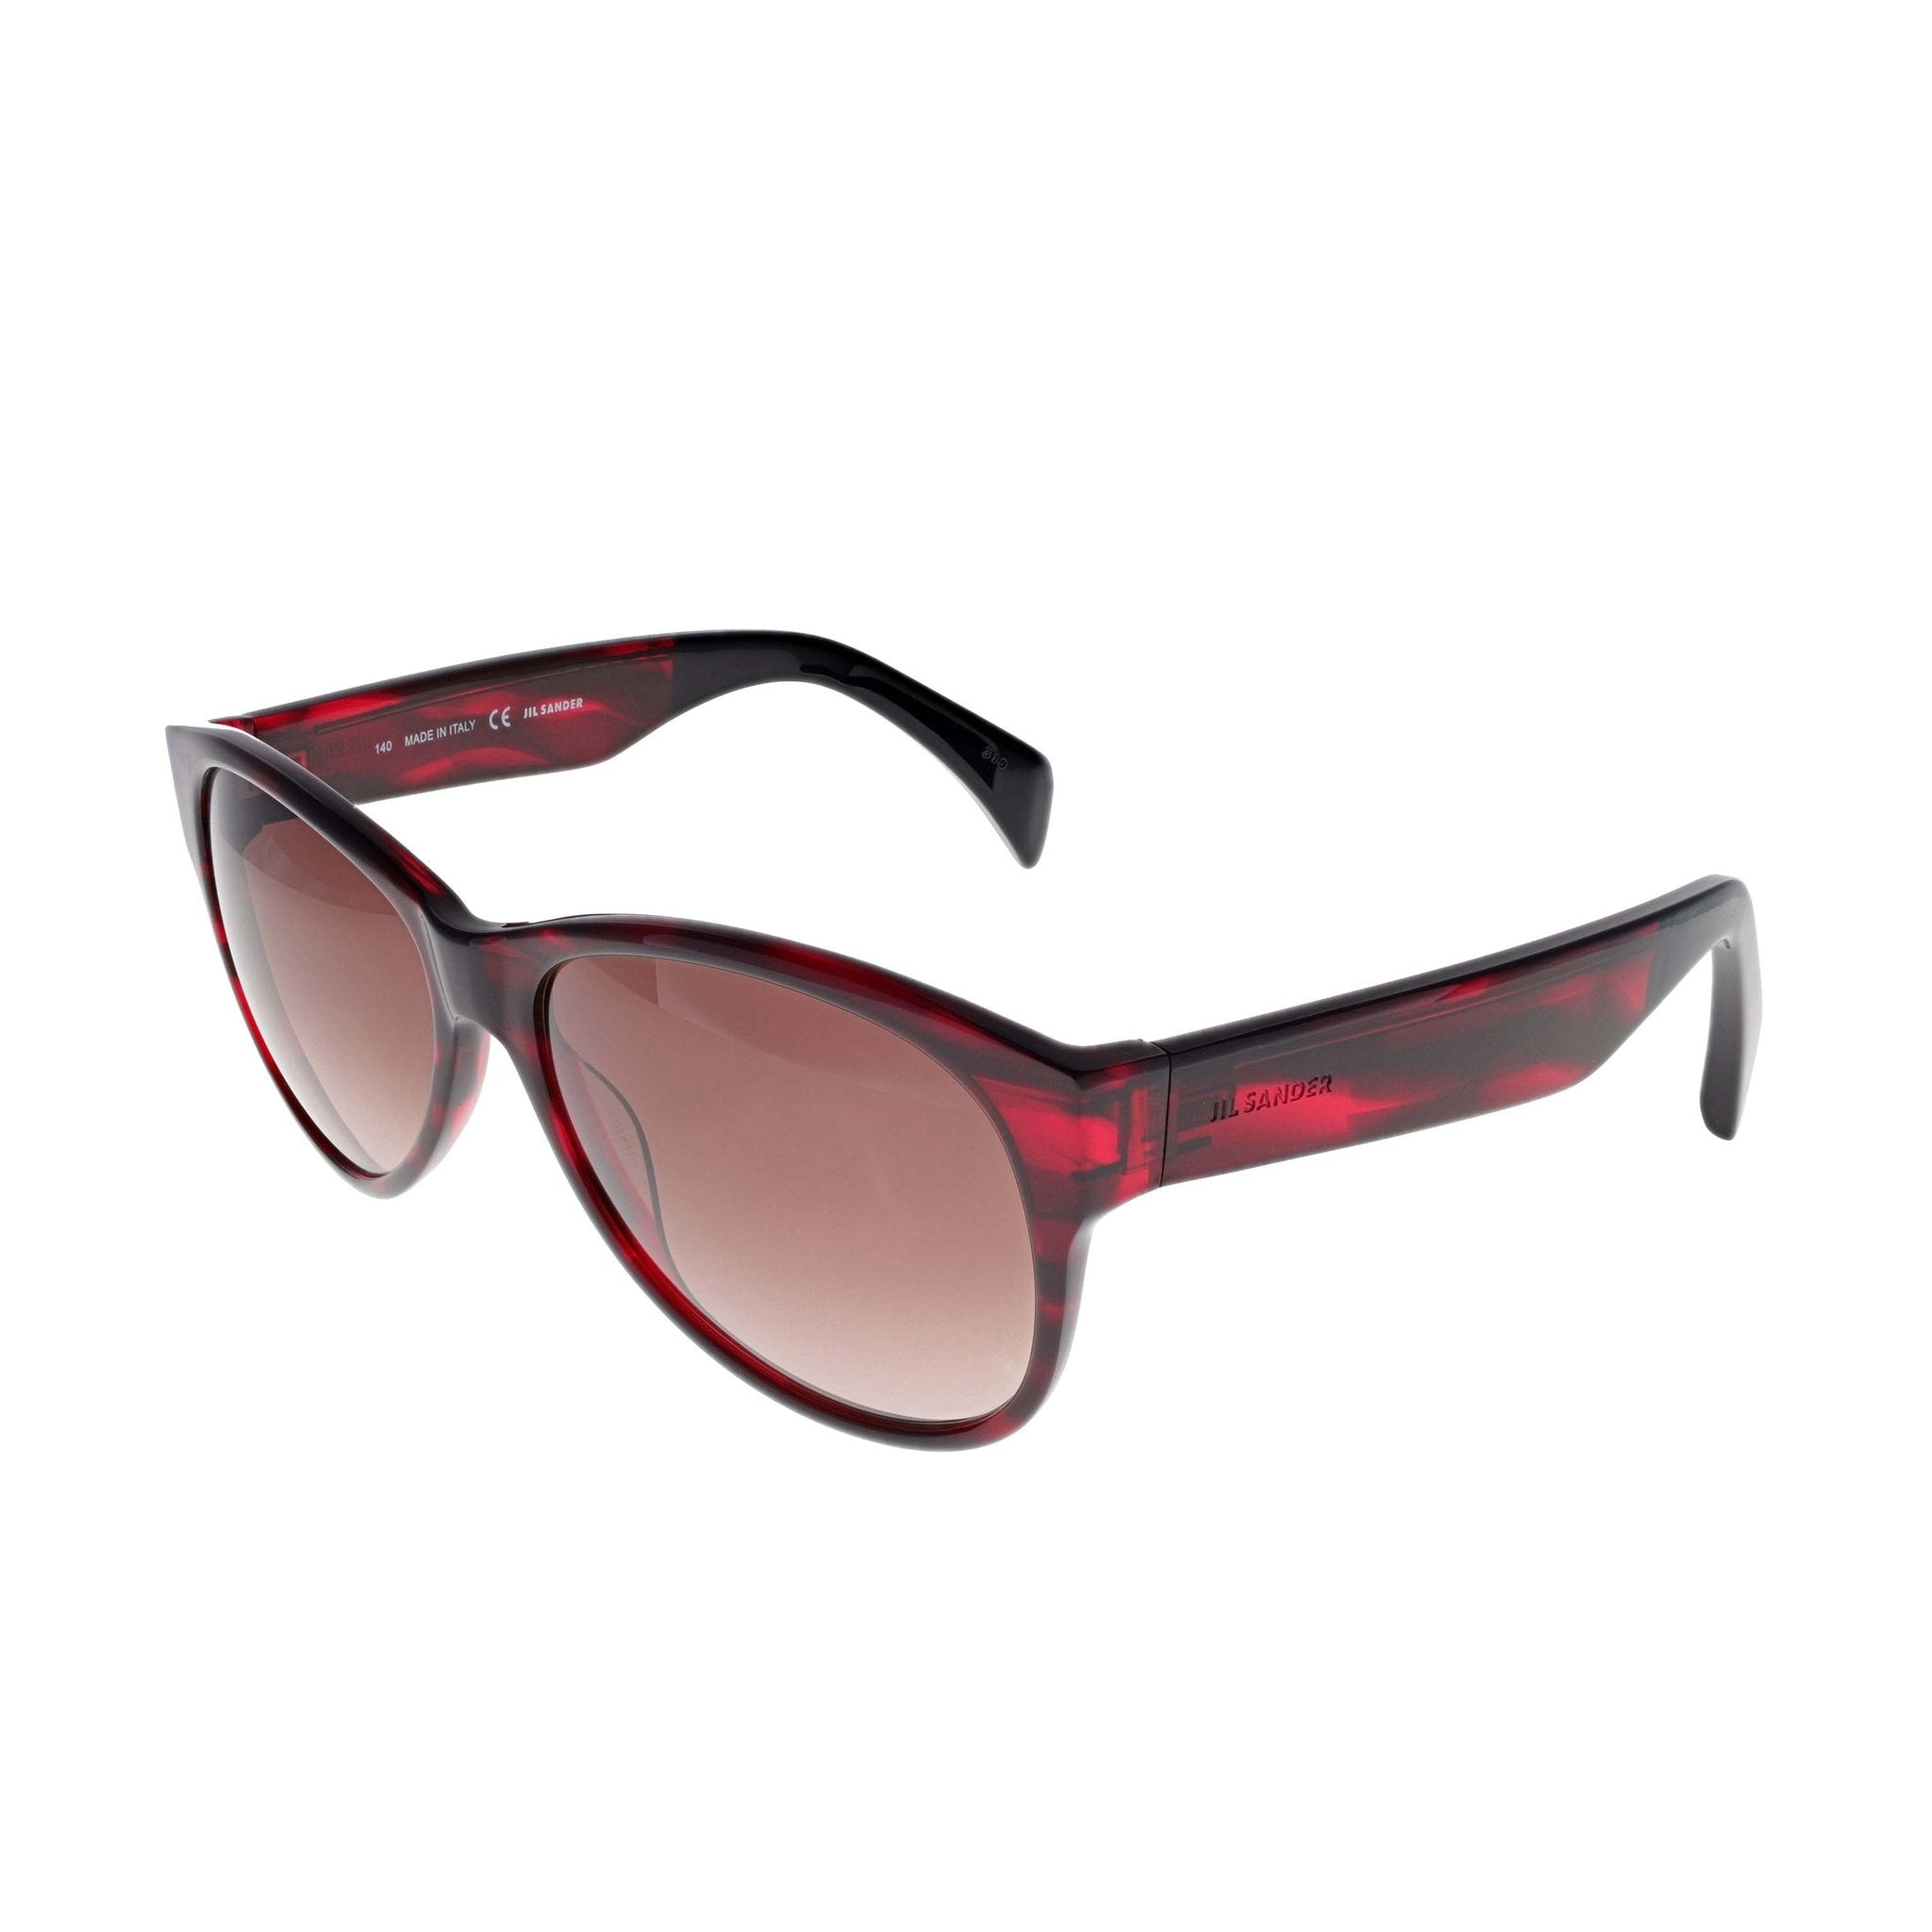 Jil Sander Sunglasses - JS725S - Striped Red